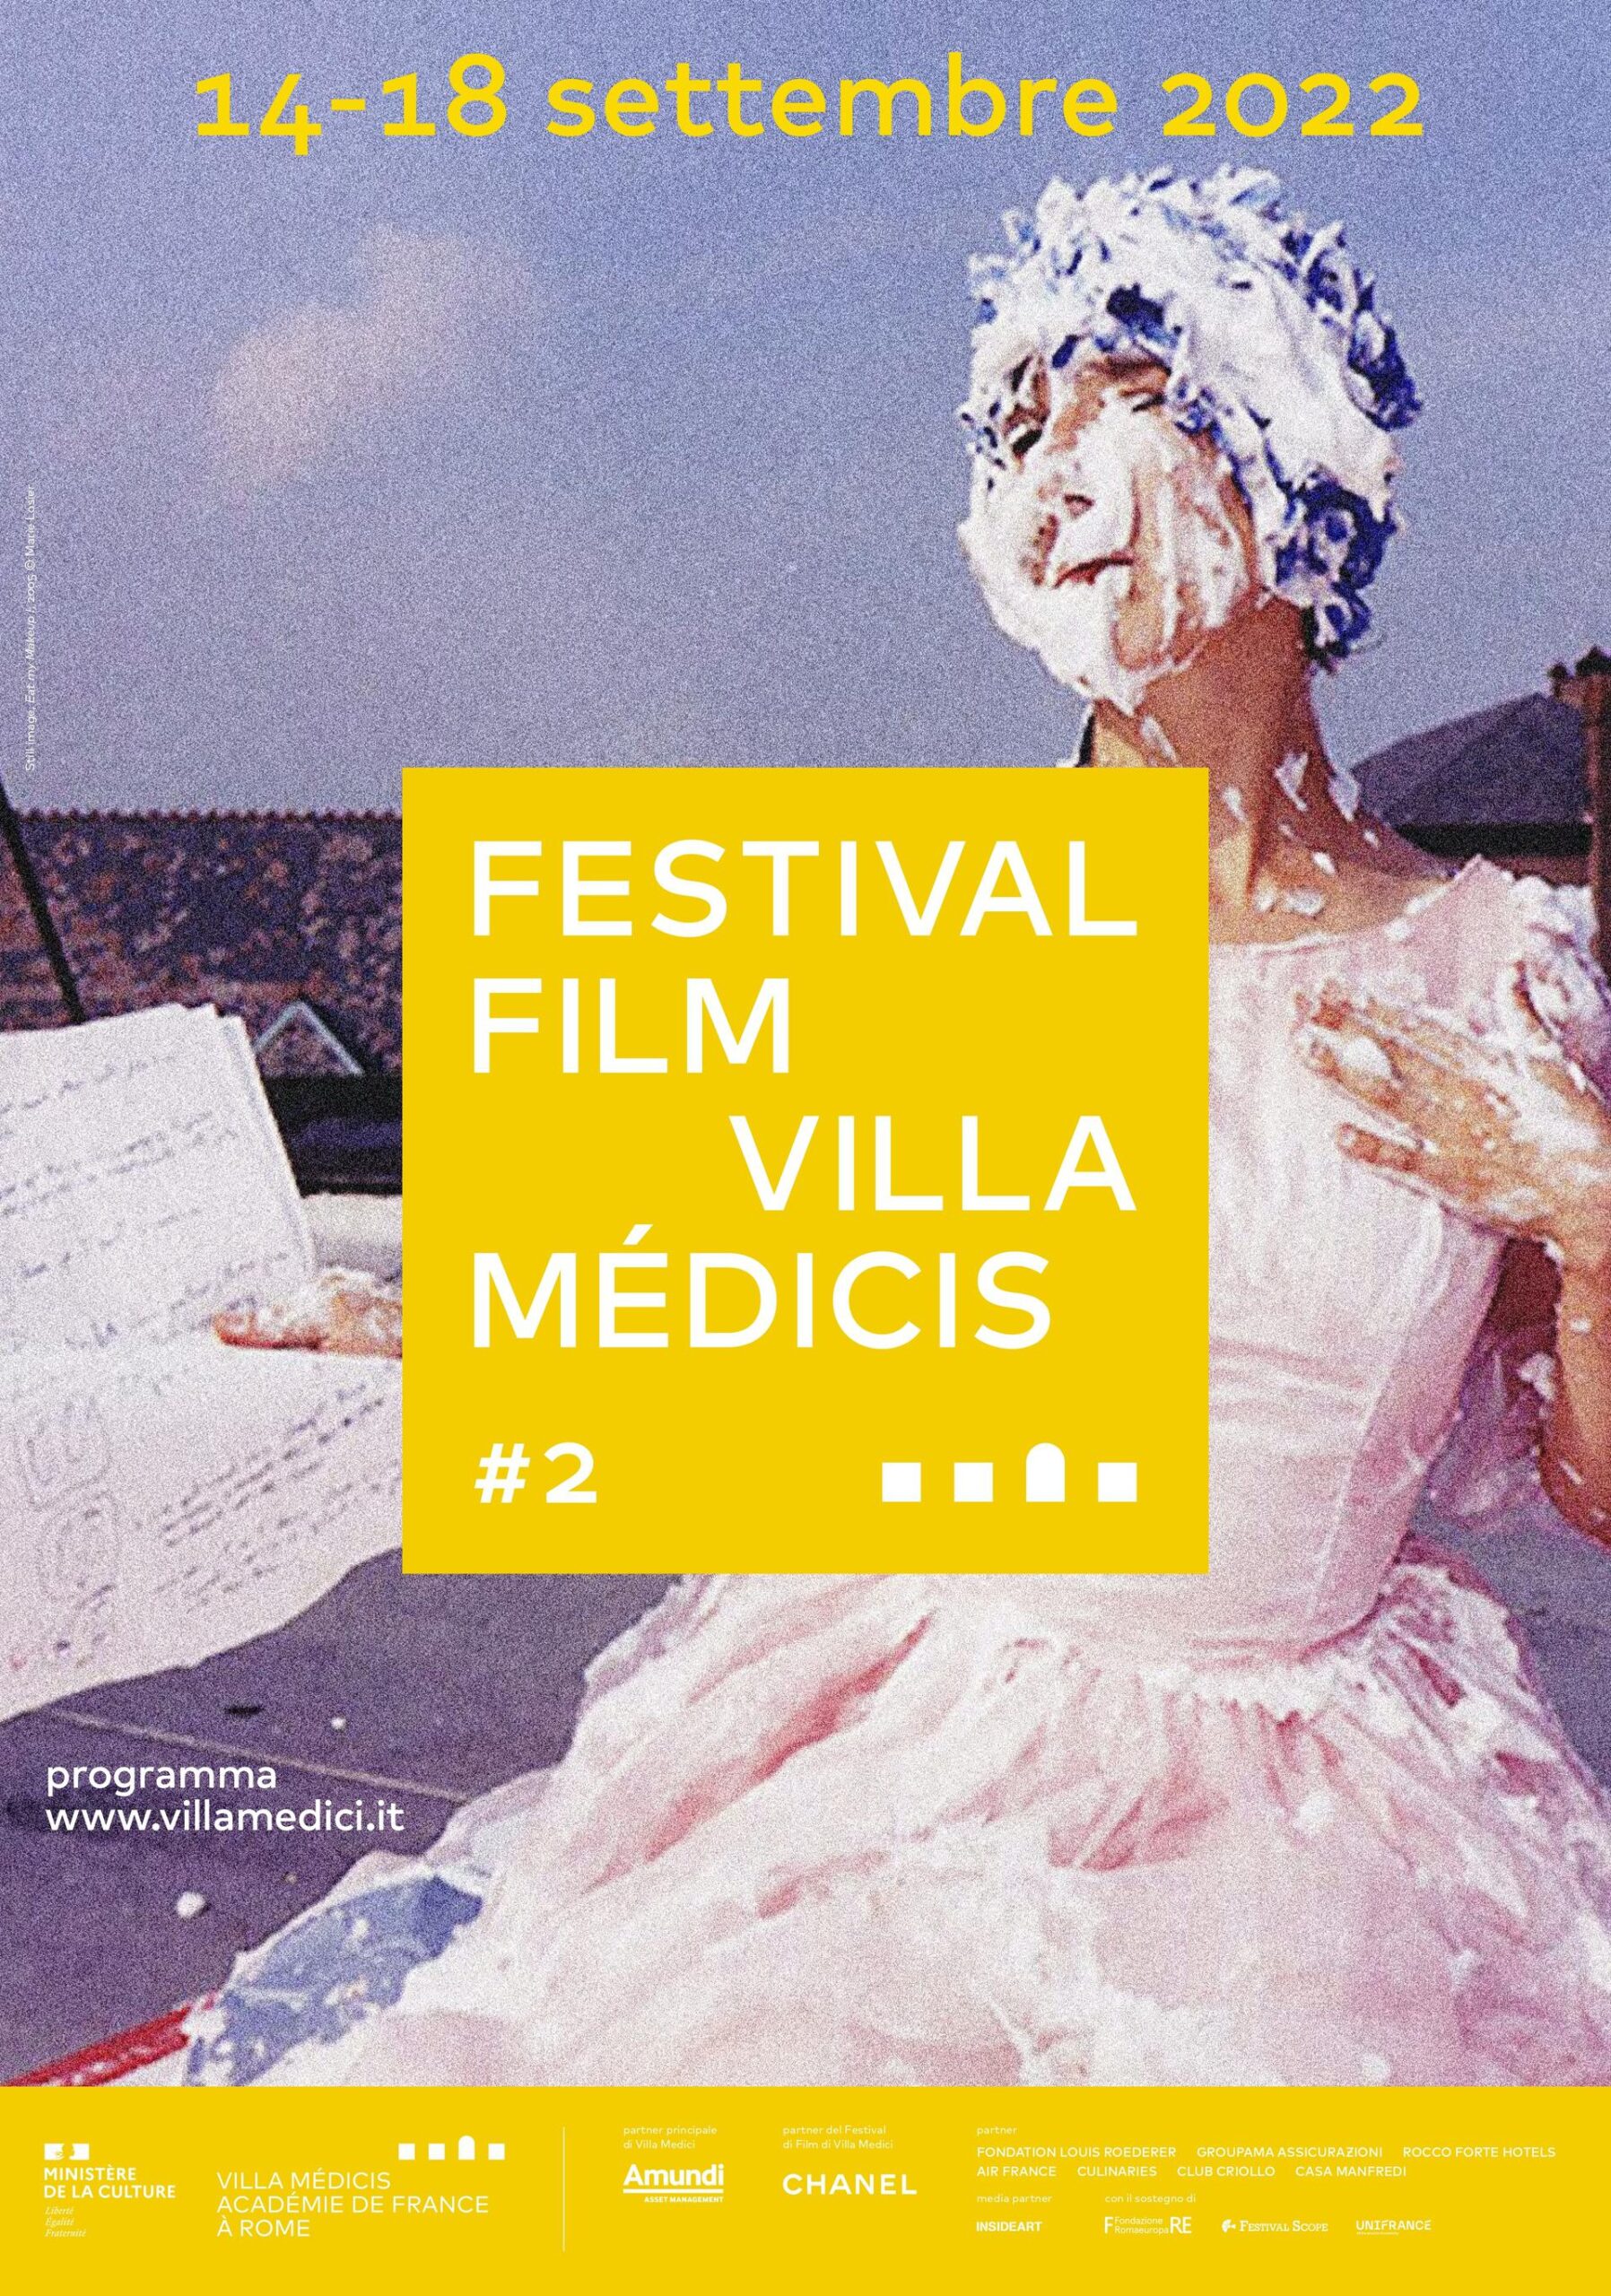 Das Villa Medici Film Festival präsentiert eine Auswahl an Filmen